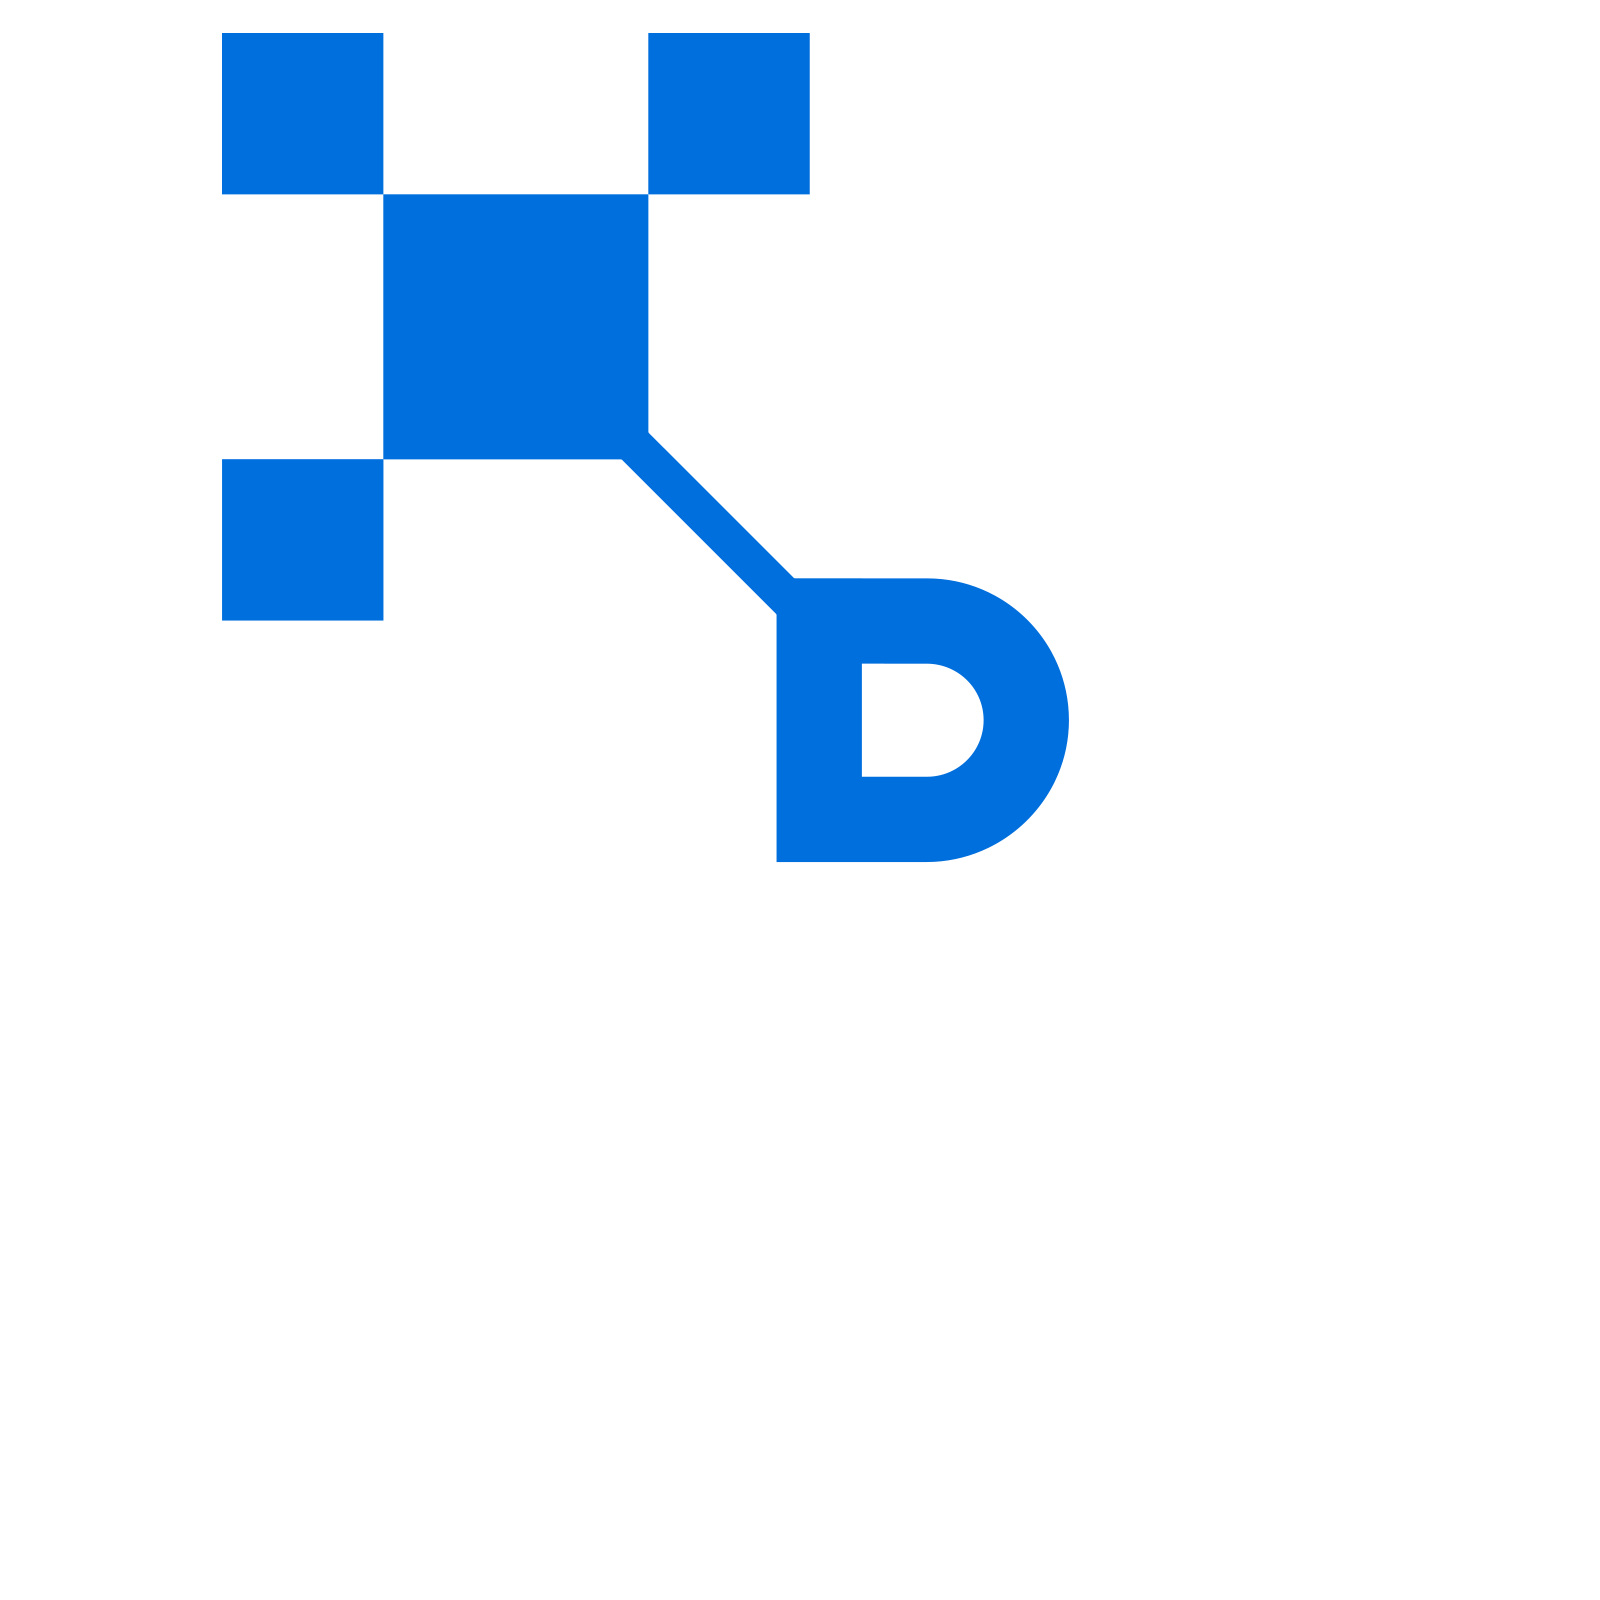 KDMC Nenasala kalmuna - Business news and updates